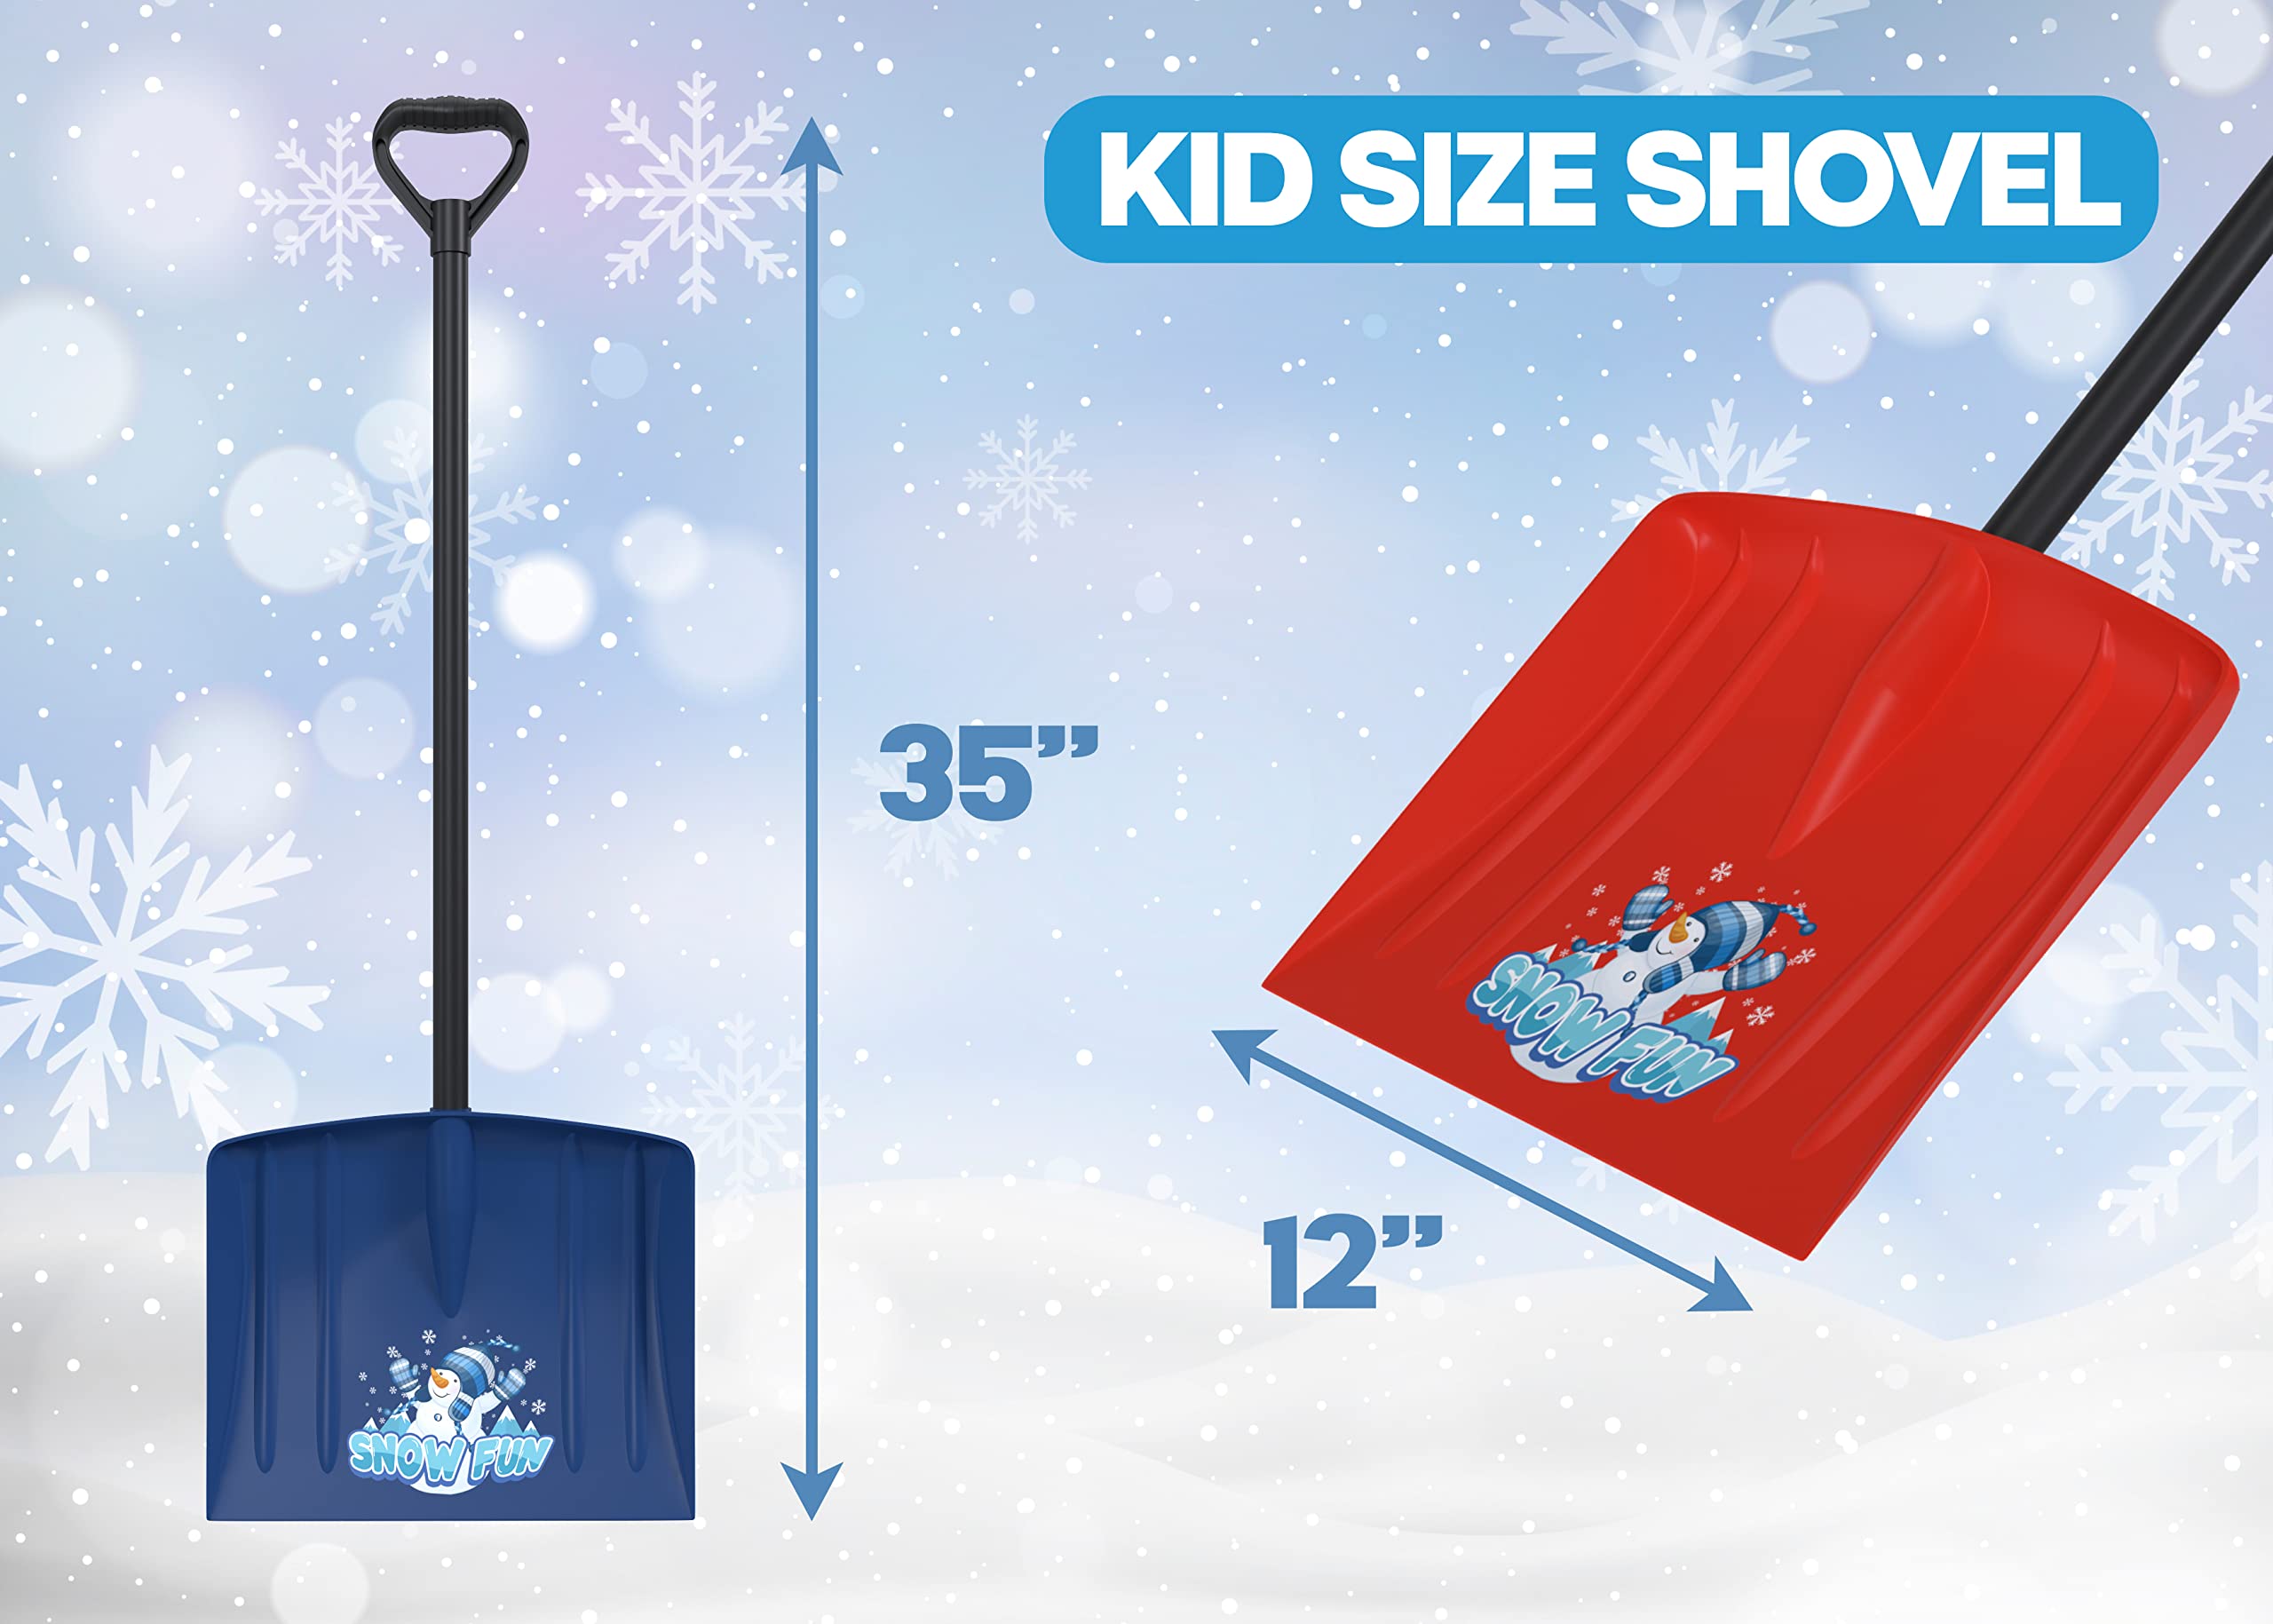 Kids Snow Shovel 36" Tall (2 Pack) - Kids Shovel, Winter Shovel, Snow Shovels for Snow Removal, Winter Toys Gifts for Kids Boys Girls